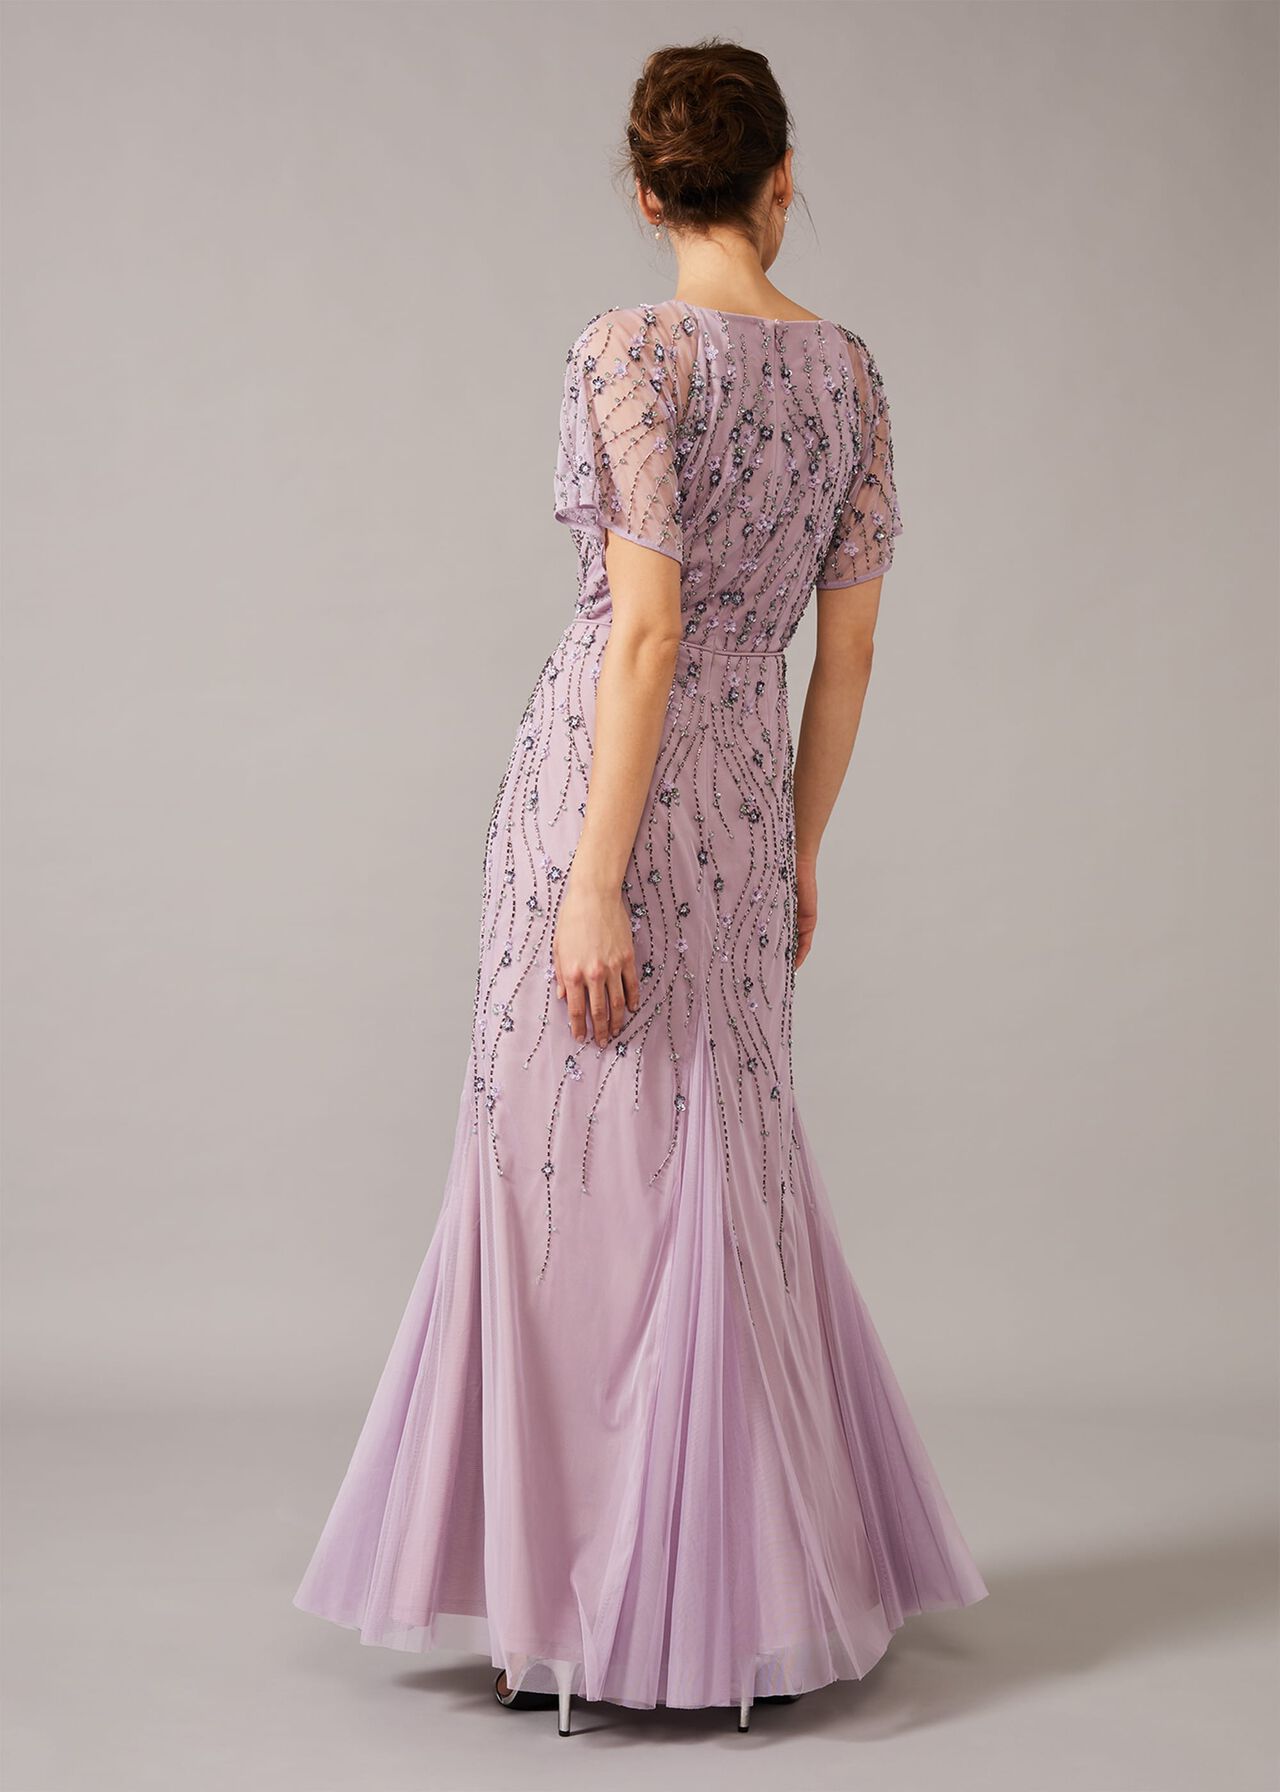 Florisa Embellished Dress